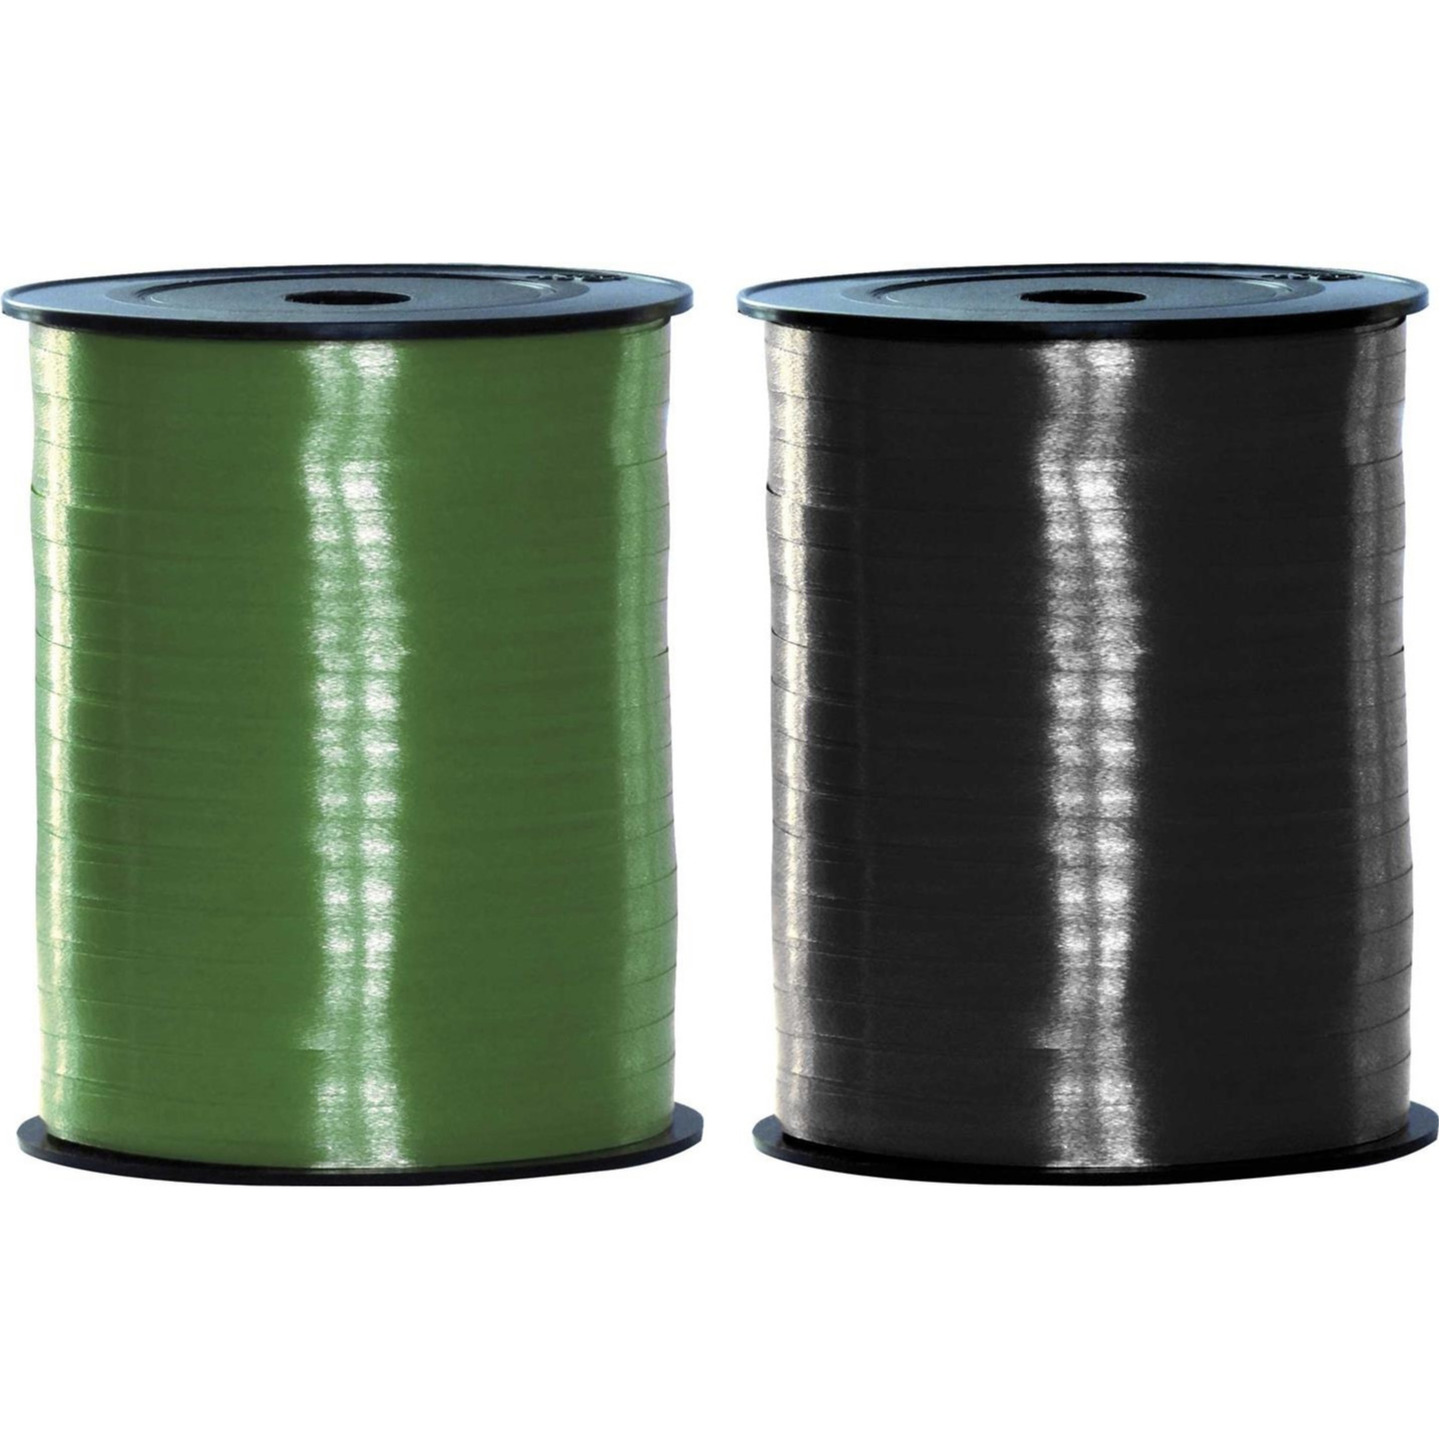 Pakket van 2 rollen lint zwart en groen 500 meter x 5 milimeter breed